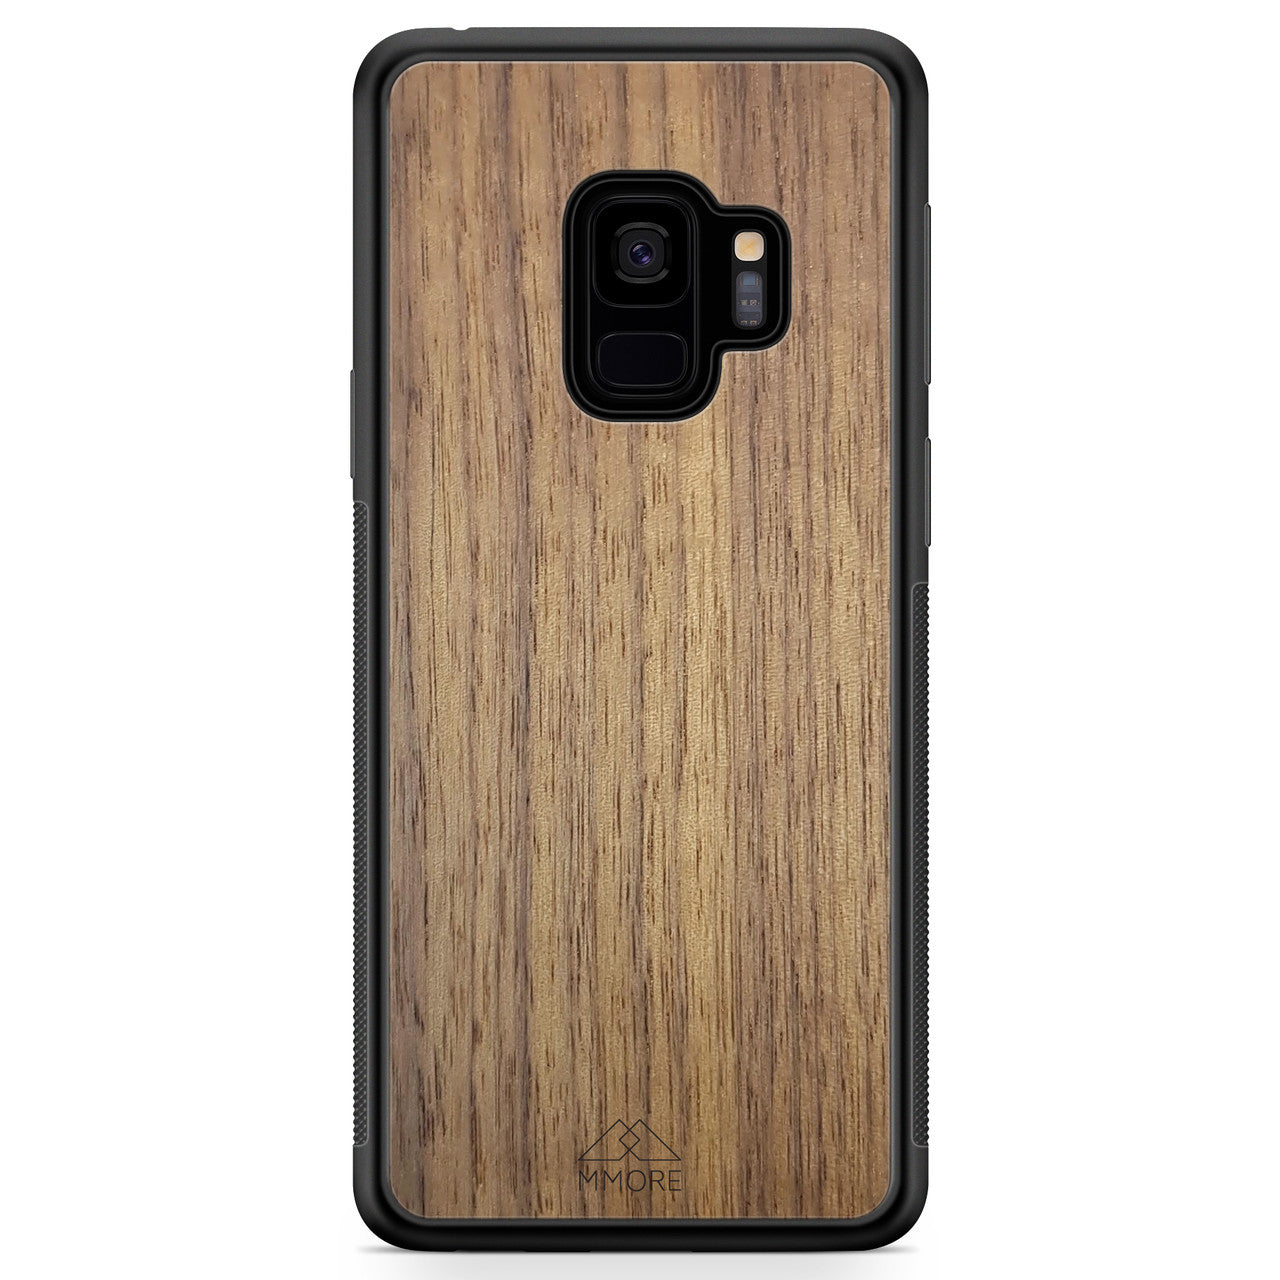 Funda de madera para teléfono Samsung S9 de nogal americano